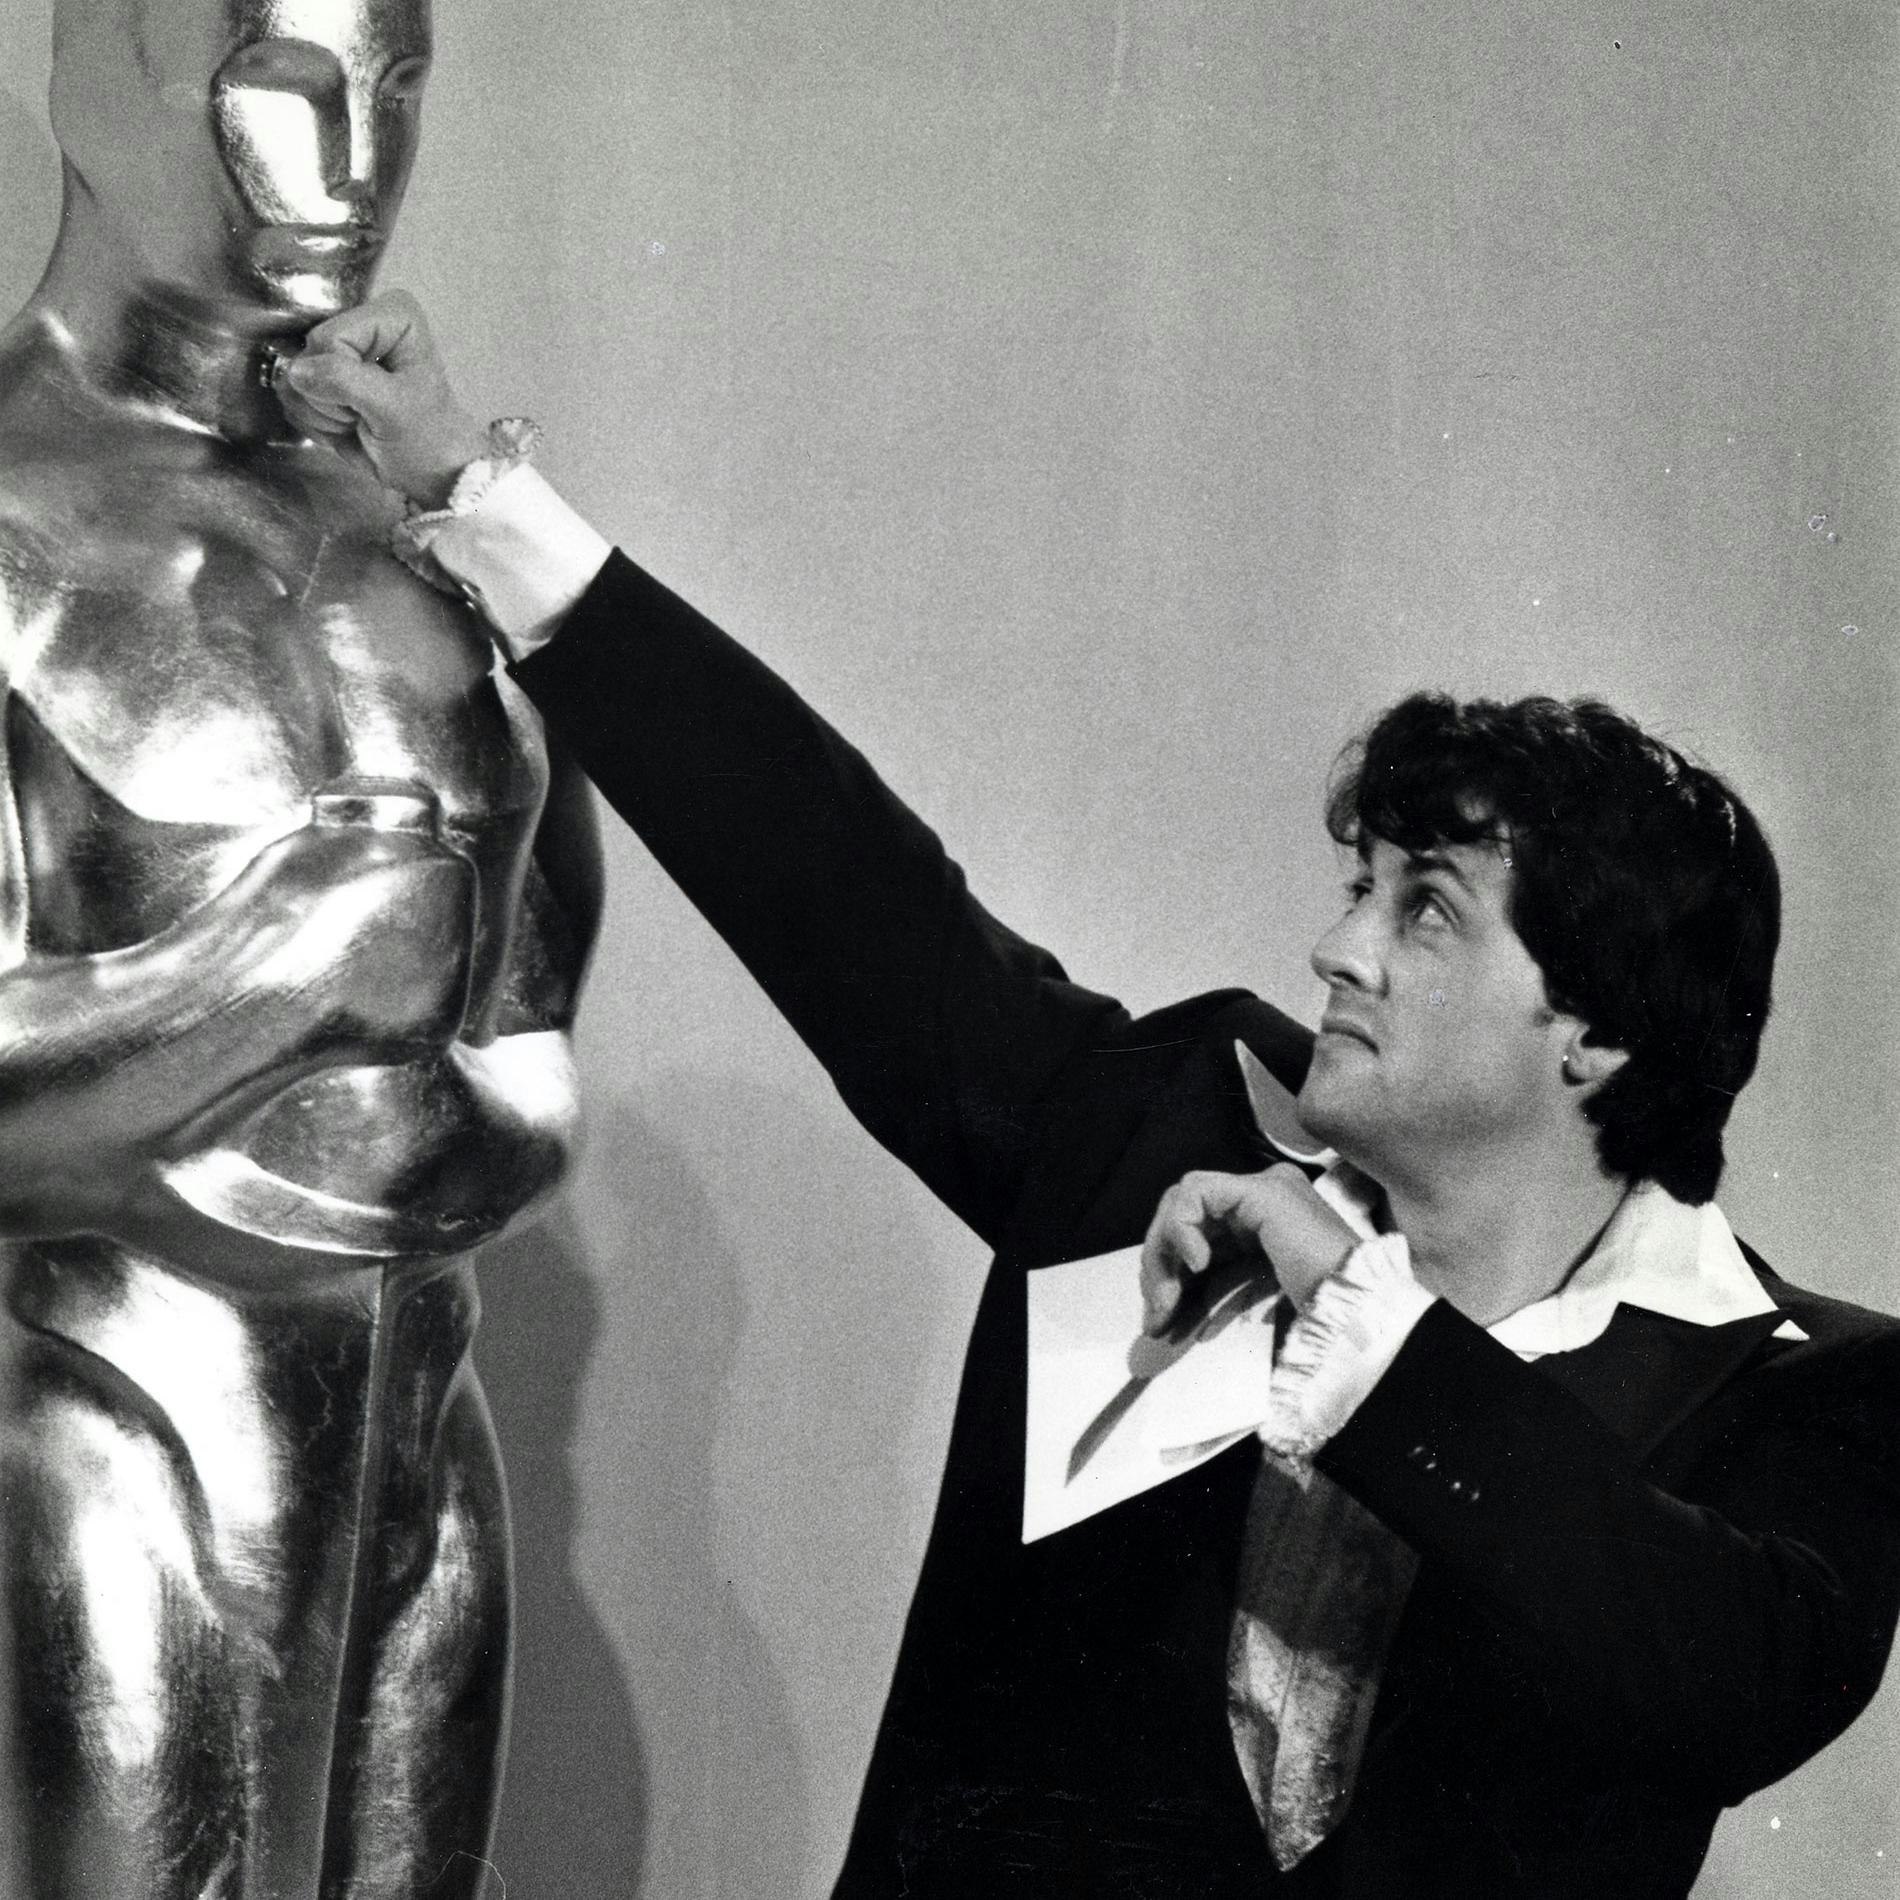 En 1977, Rocky reçoit 10 nominations aux Oscars dans 9 catégories distinctes.